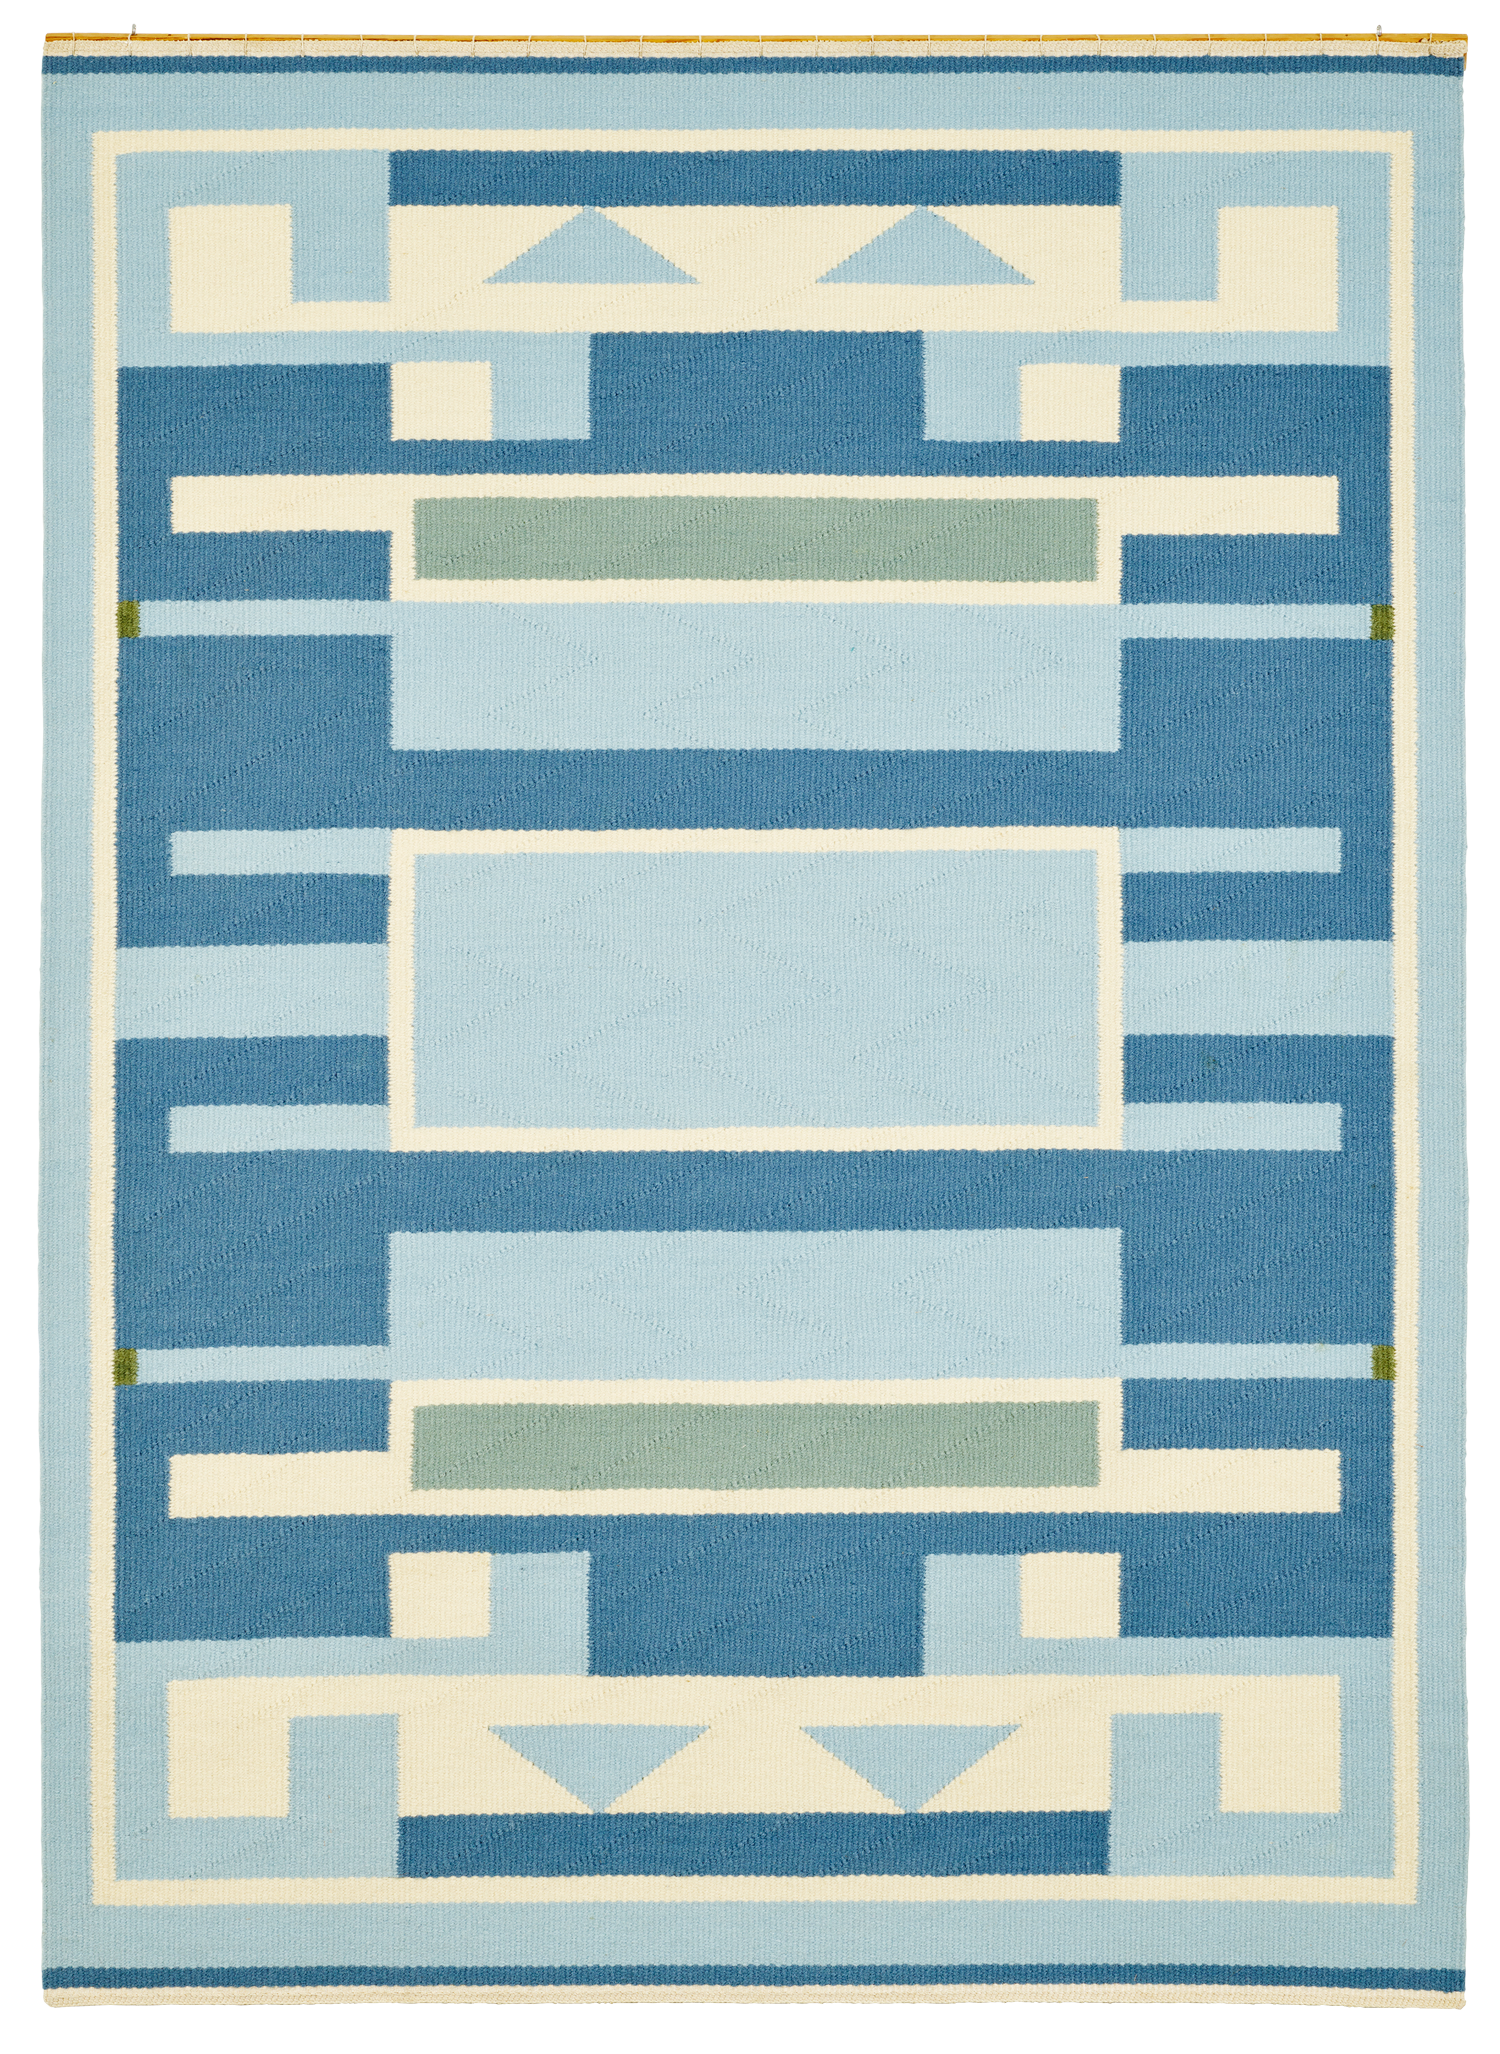 Untitled, 1978. Carpet in wool, 170 x 126 cm. Ⓒ Holstebro Kunstmuseum